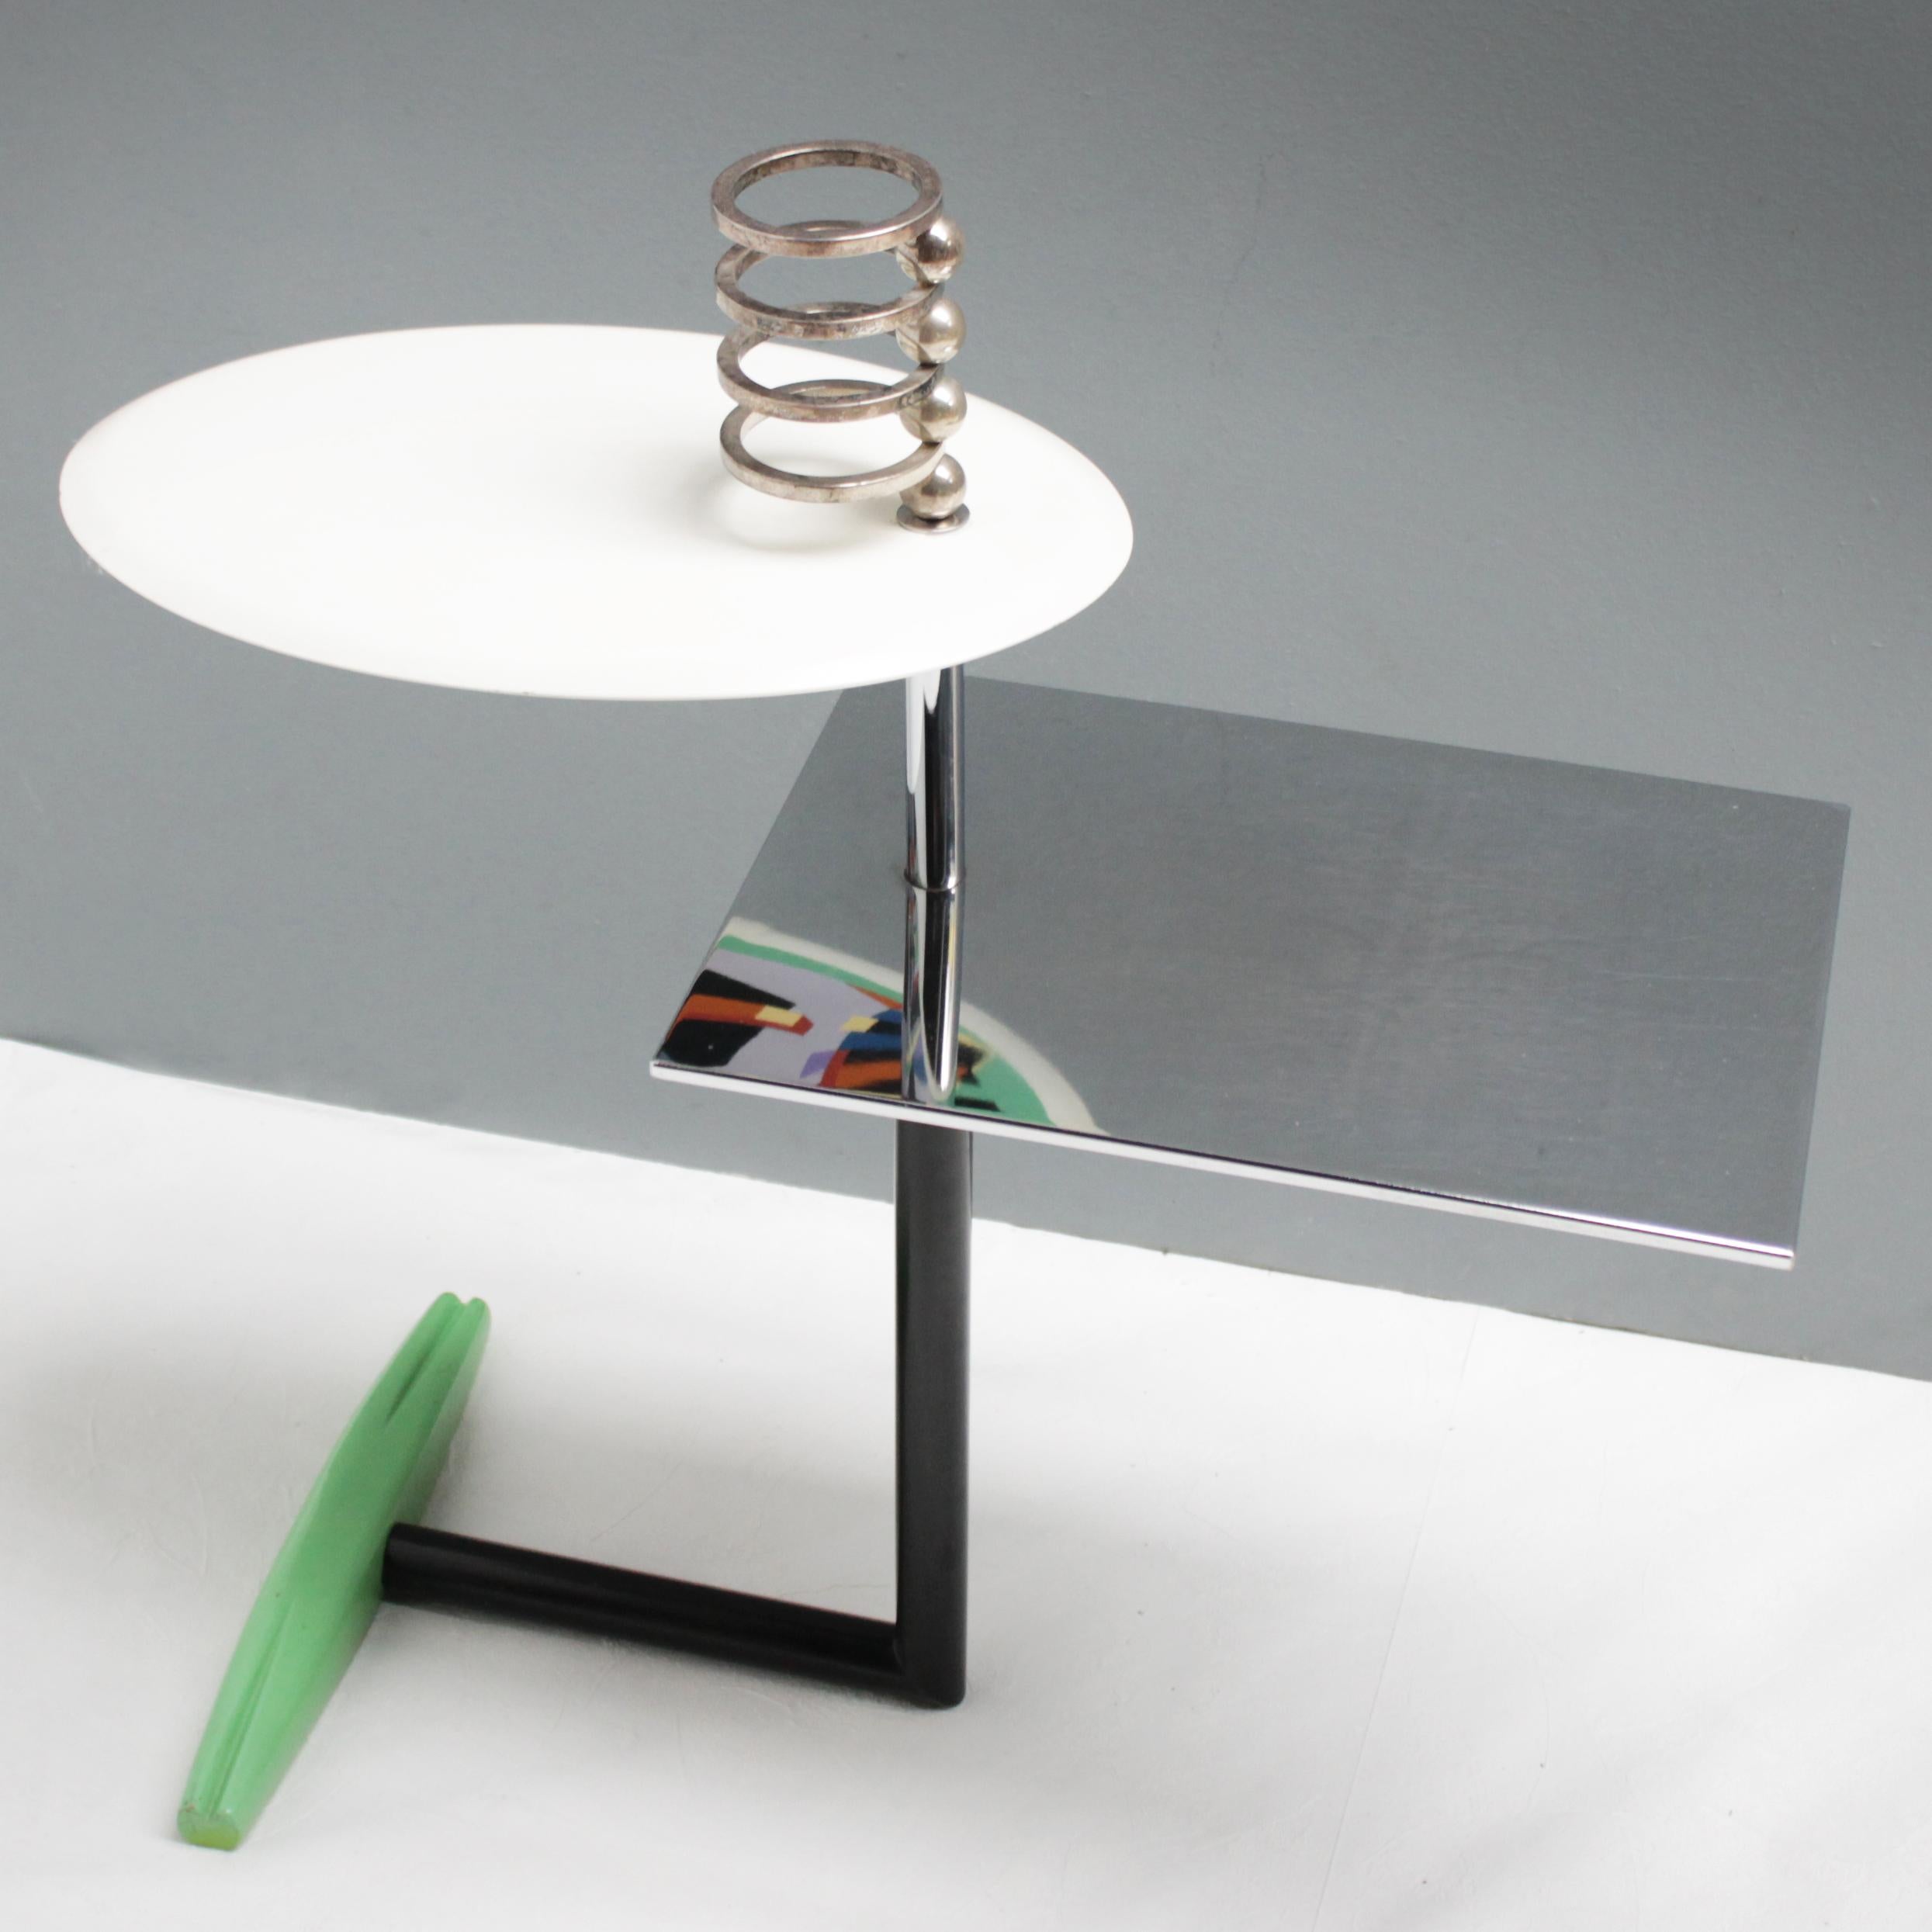 Angeboten wird ein seltener kleiner Tisch 'Acilio' von Alessandro Mendini für Zabro - Nuova Alchimia:: Mailand. Ein schönes und stilvolles Beispiel für das Design der Gruppe Memphis:: dem Phänomen der 80er Jahre. 
Gusseisen mit holzverkleideter